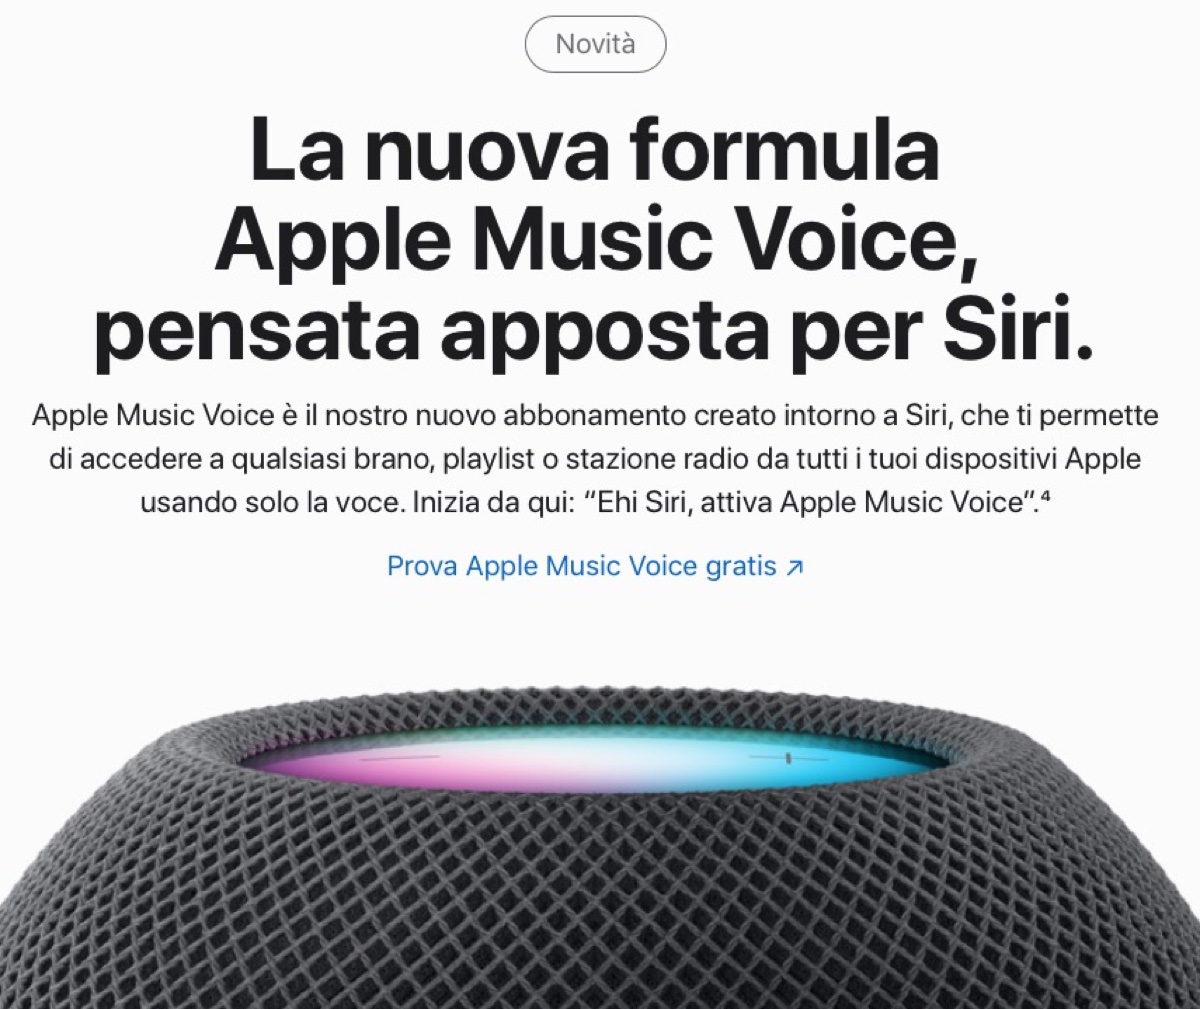 Apple Music Voice, come funziona il piano super economico